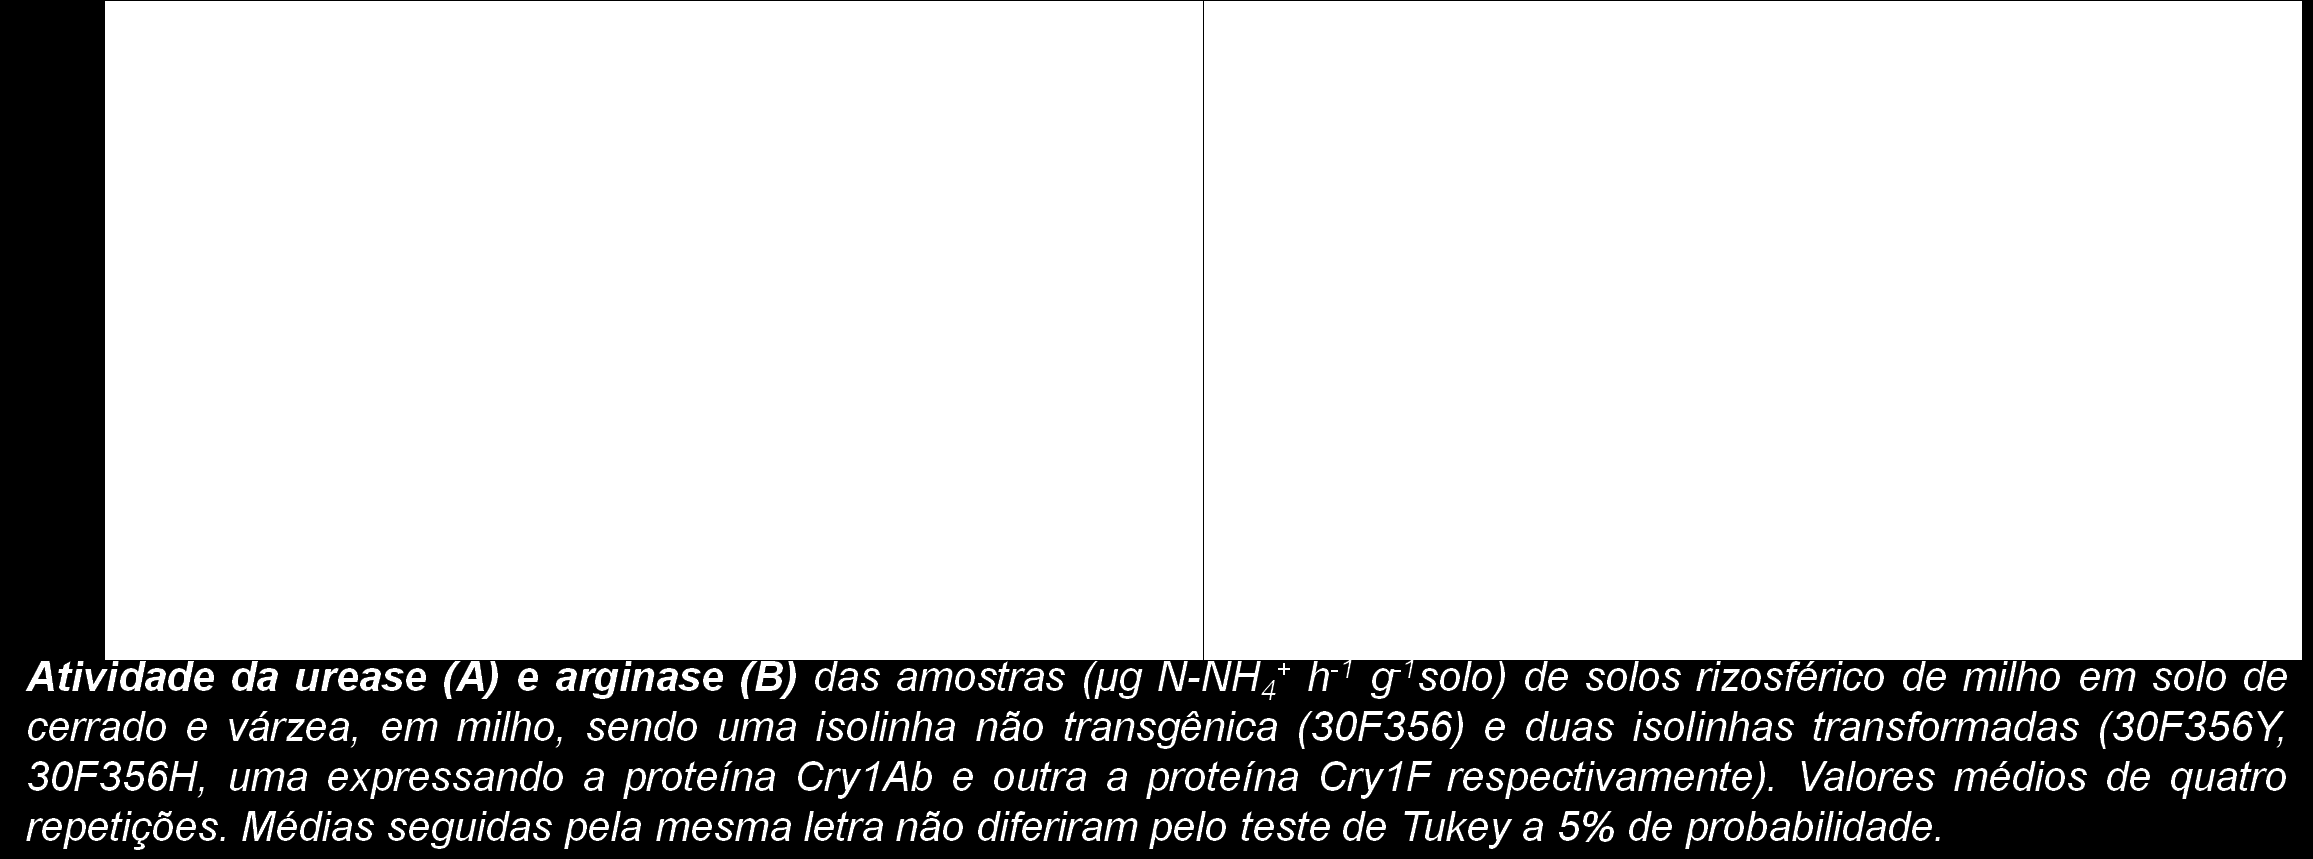 Qualidade biológica do solo rizosférico de plantas transgênicas de milho, expressando proteínas CryAb e Cry1F